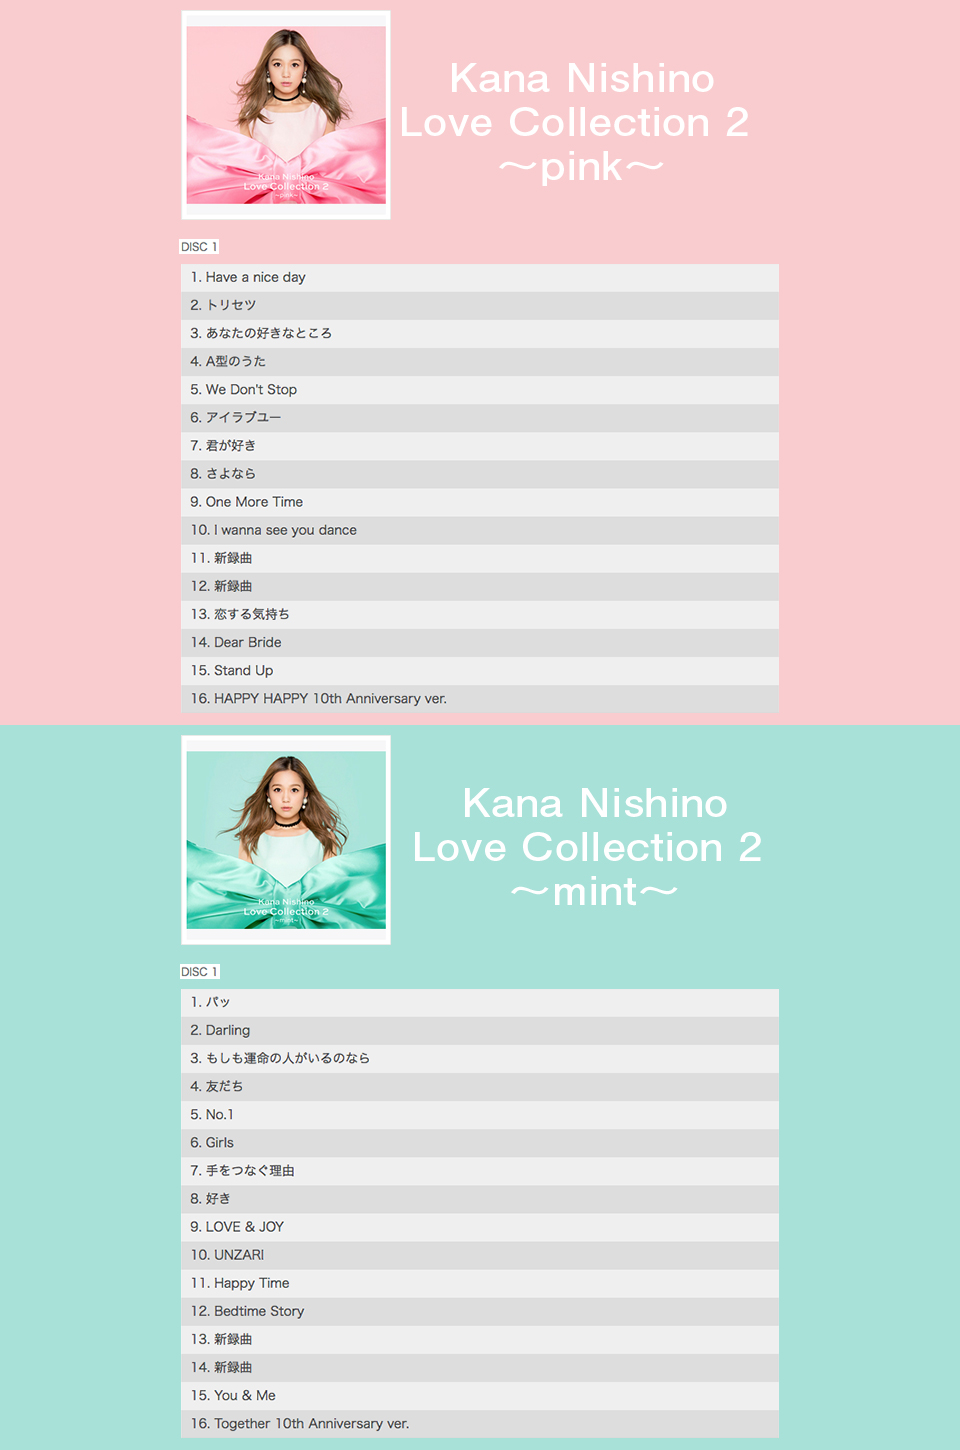 エディオンネットショップ ソニーミュージック Secl2358 西野カナ Love Collection 2 Mint 初回生産限定盤 Cd Dvd